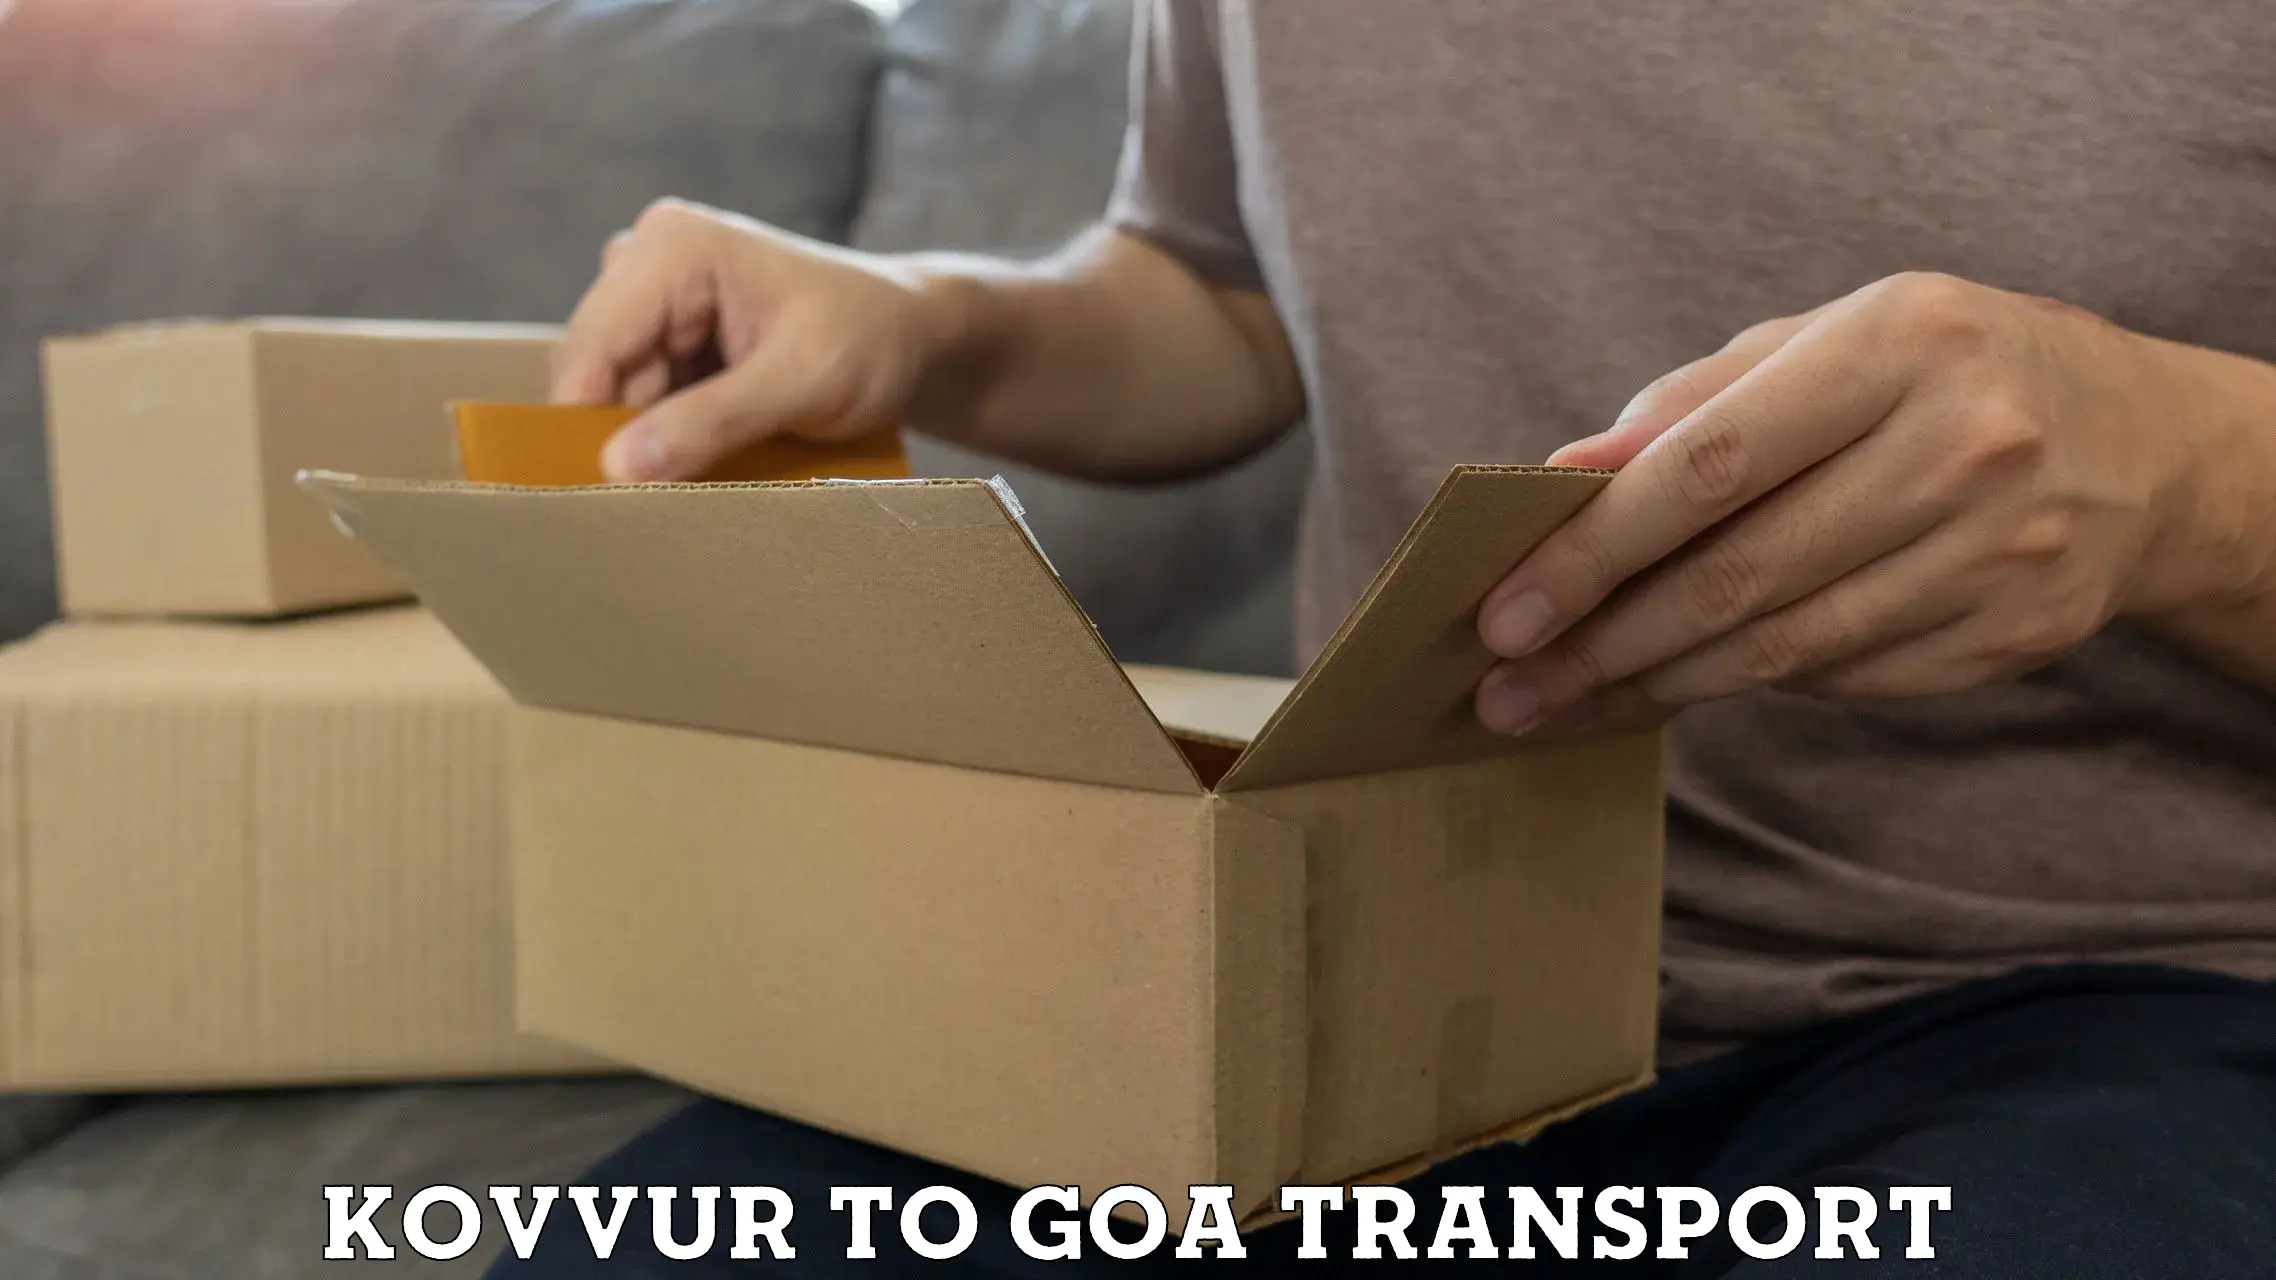 Two wheeler transport services Kovvur to Ponda